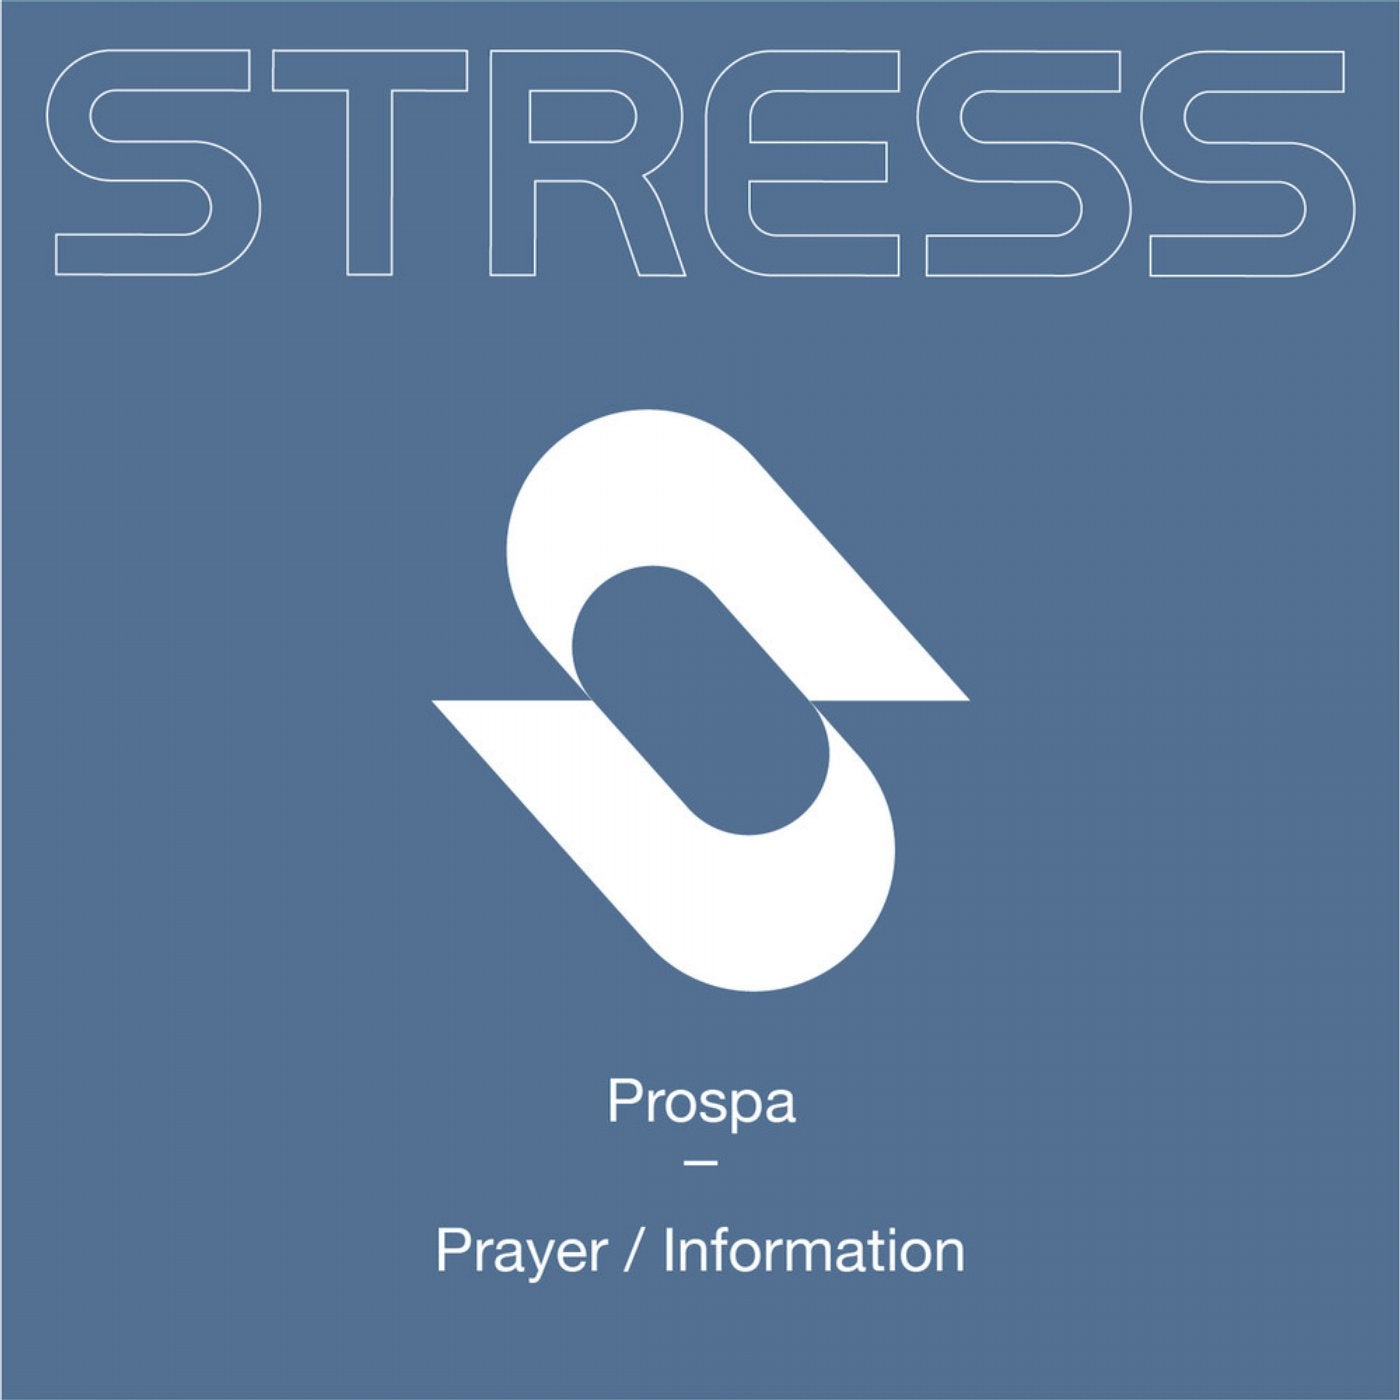 Prayer / Information